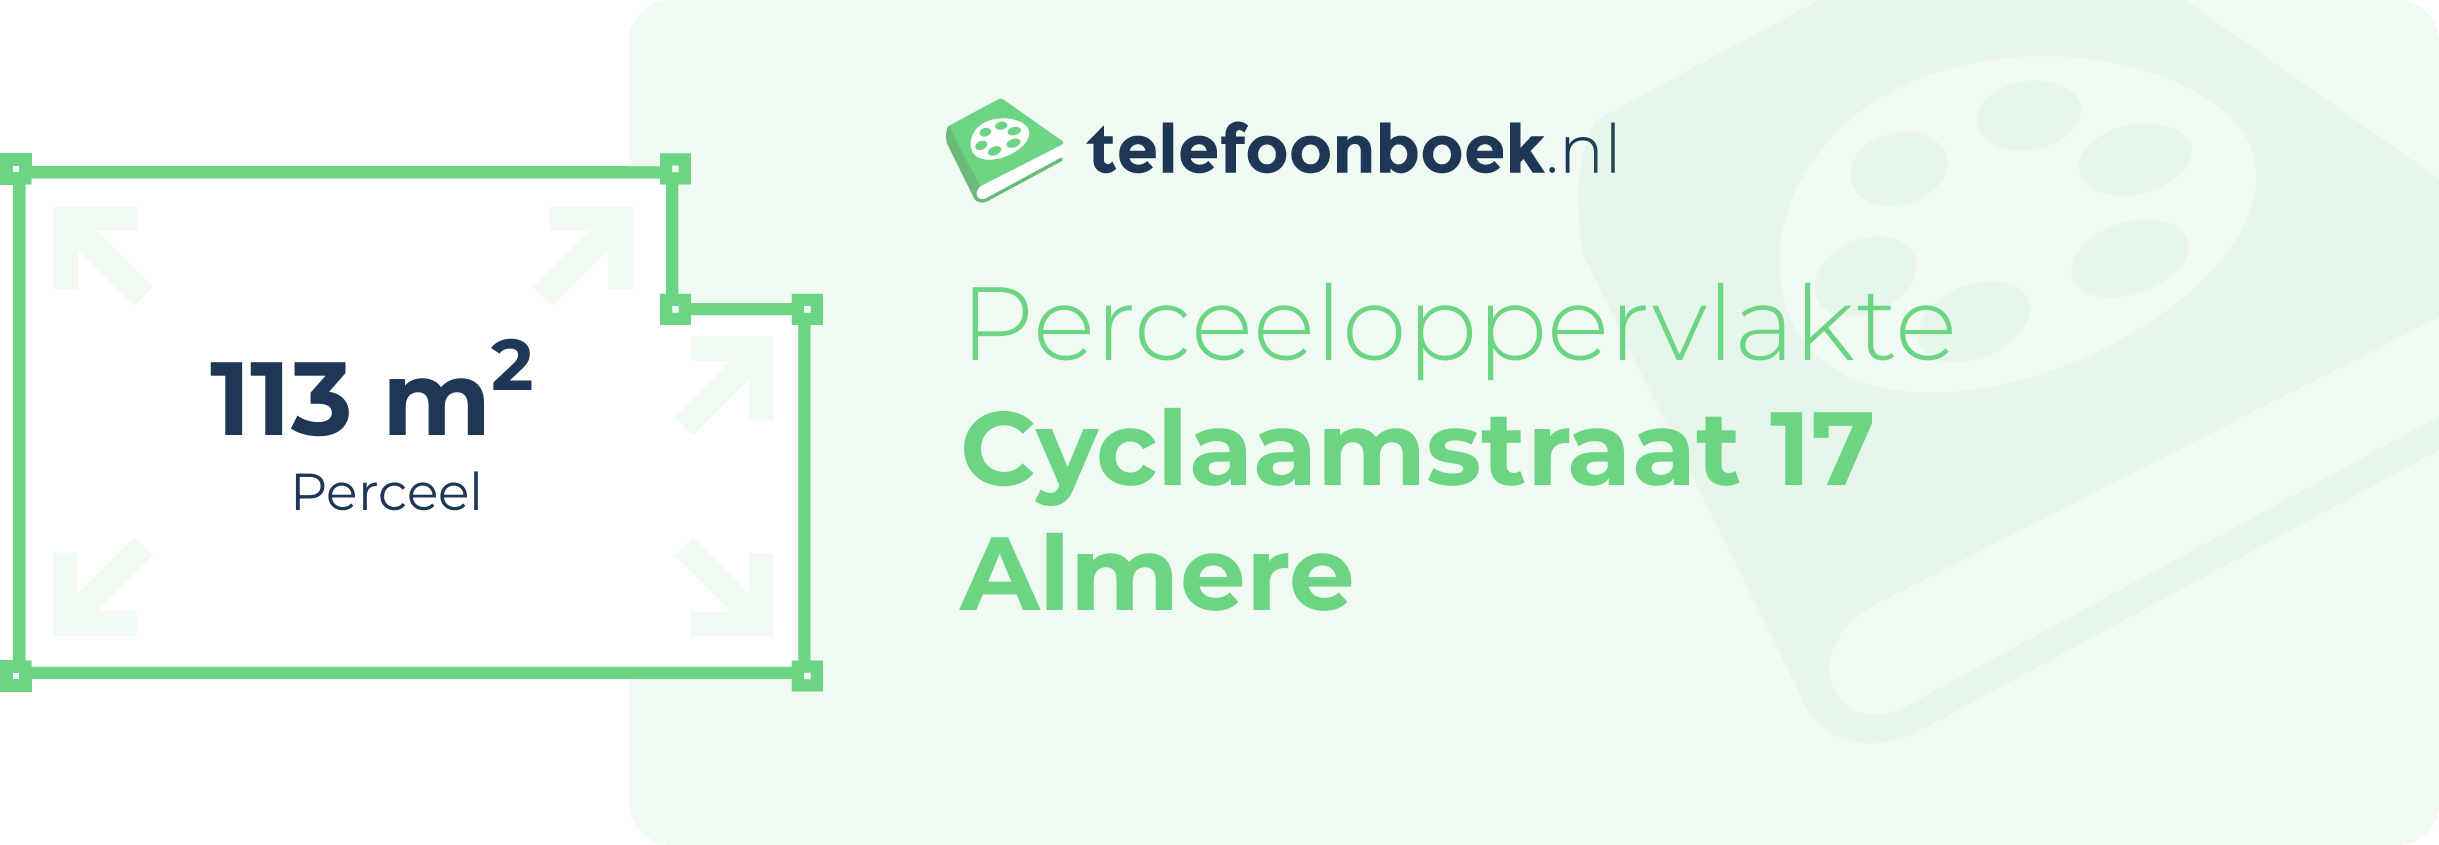 Perceeloppervlakte Cyclaamstraat 17 Almere